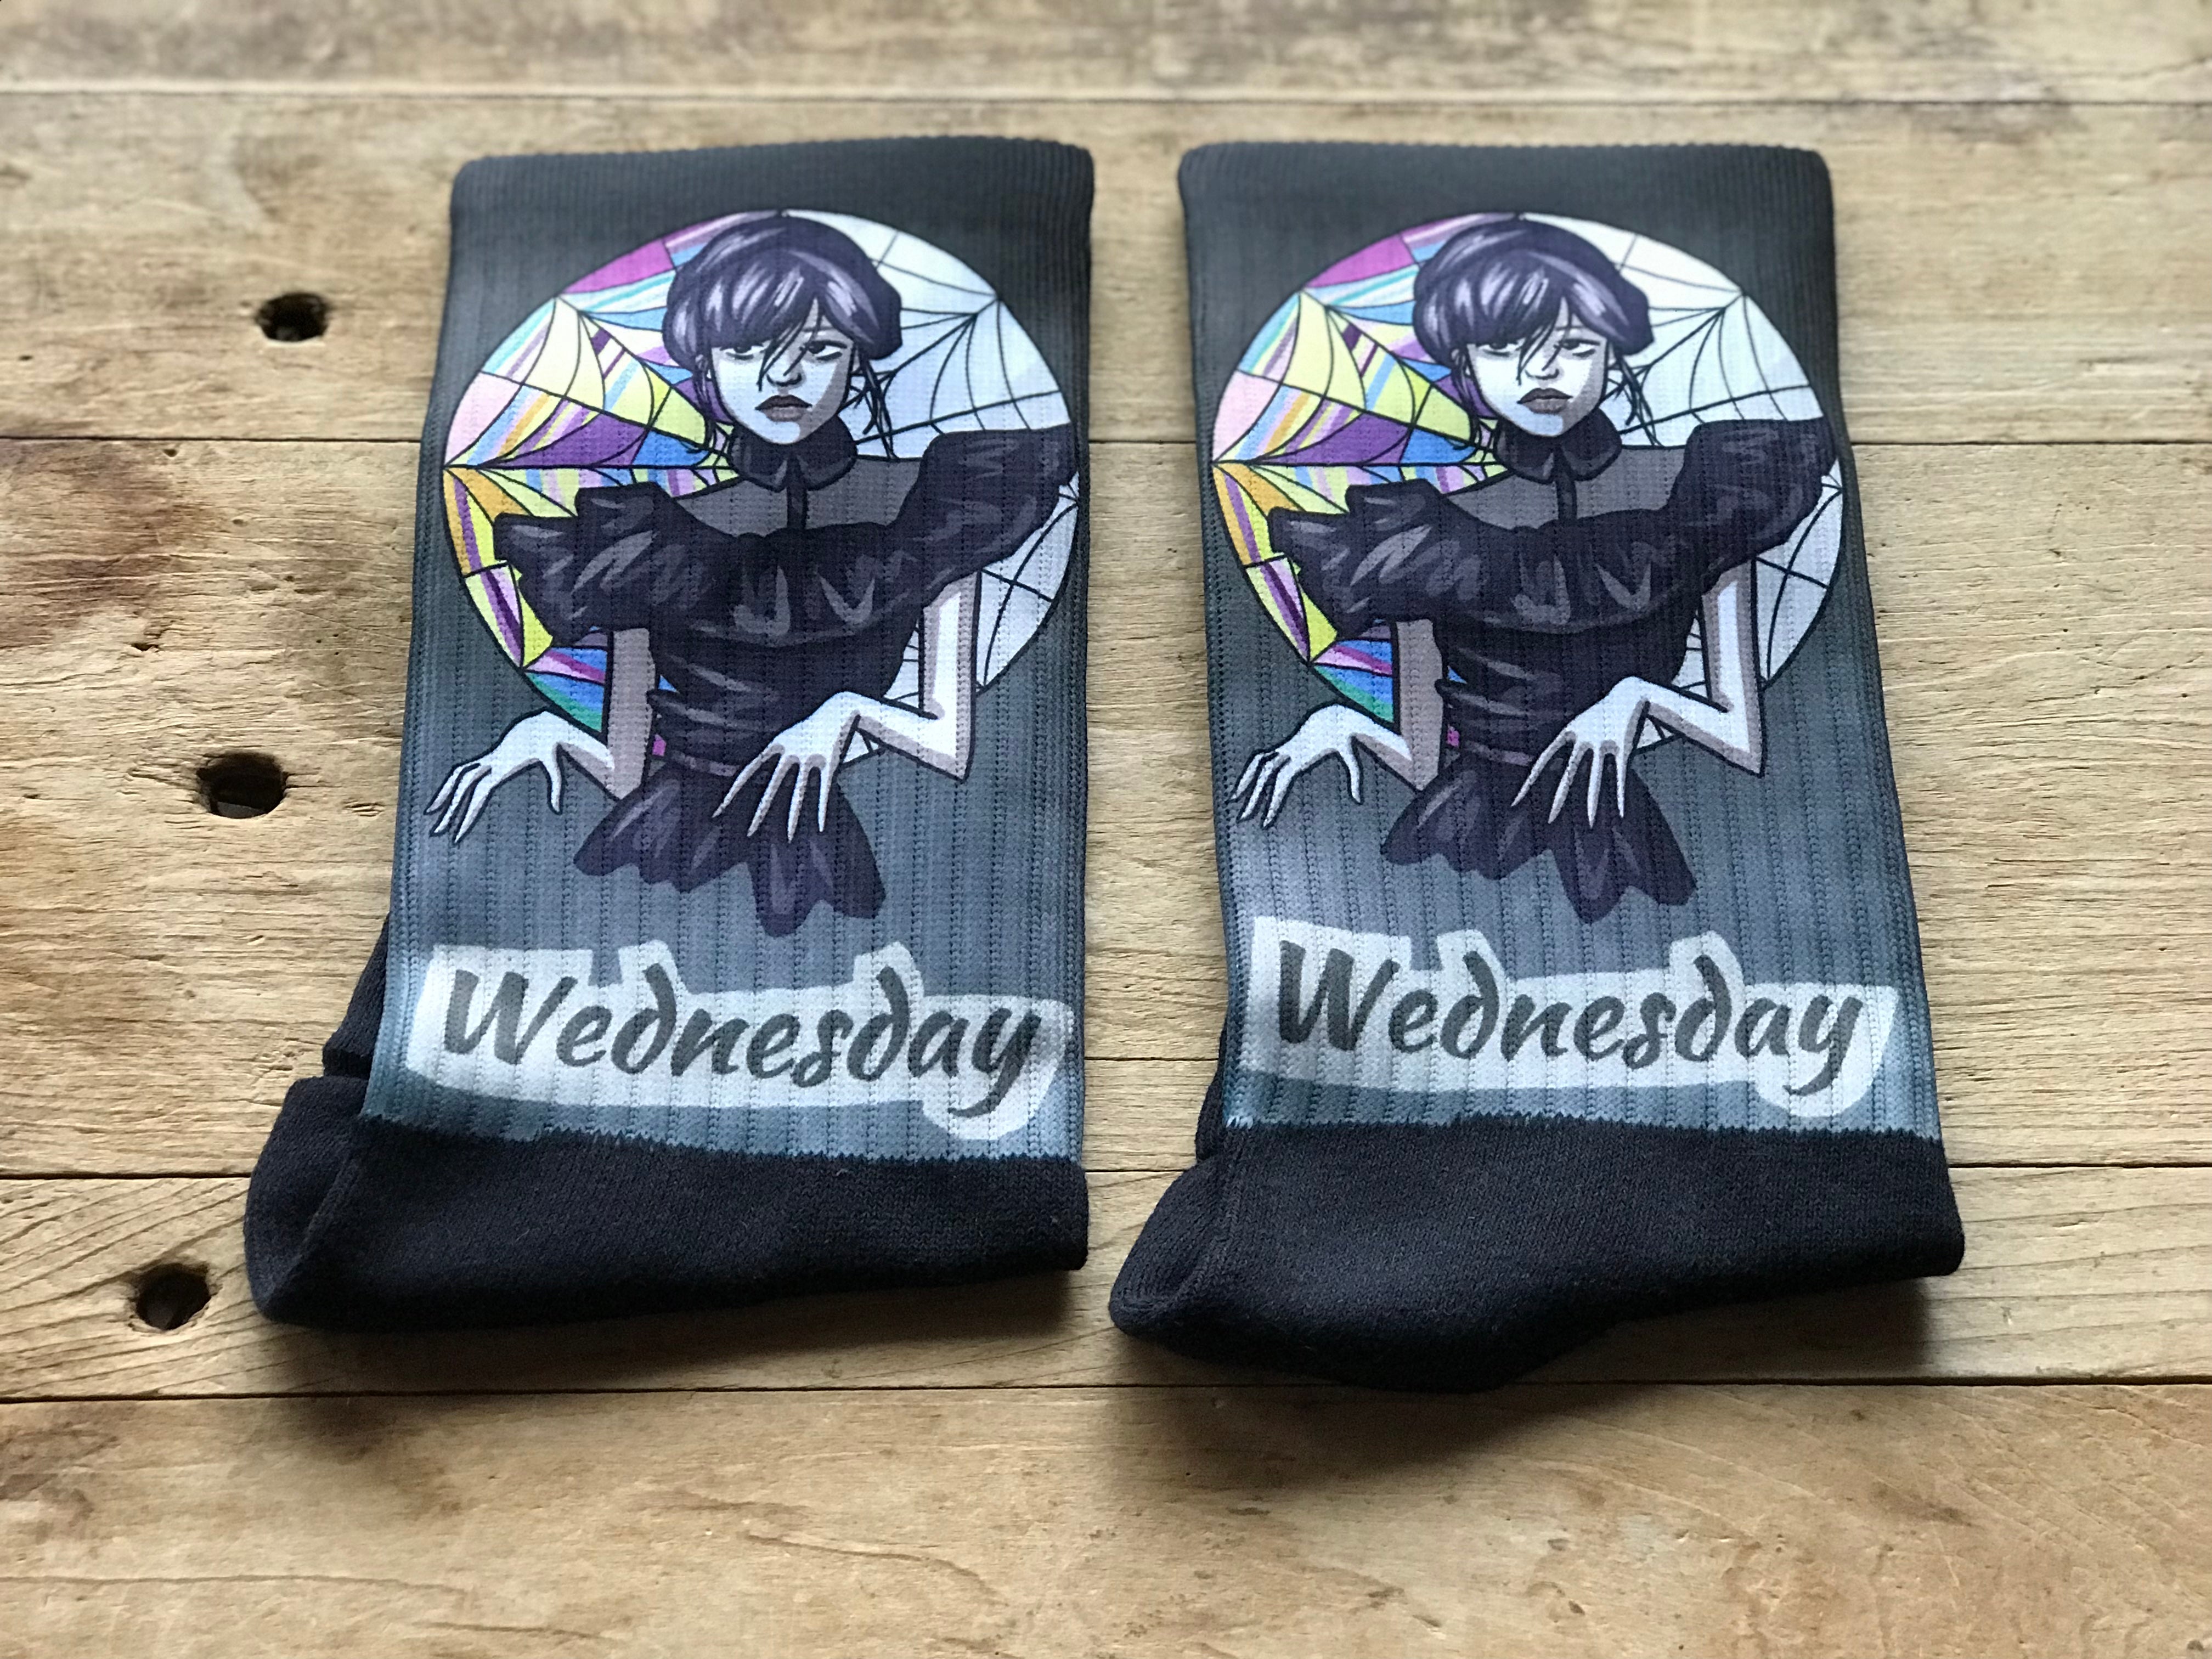 Wednesday Crew Socks